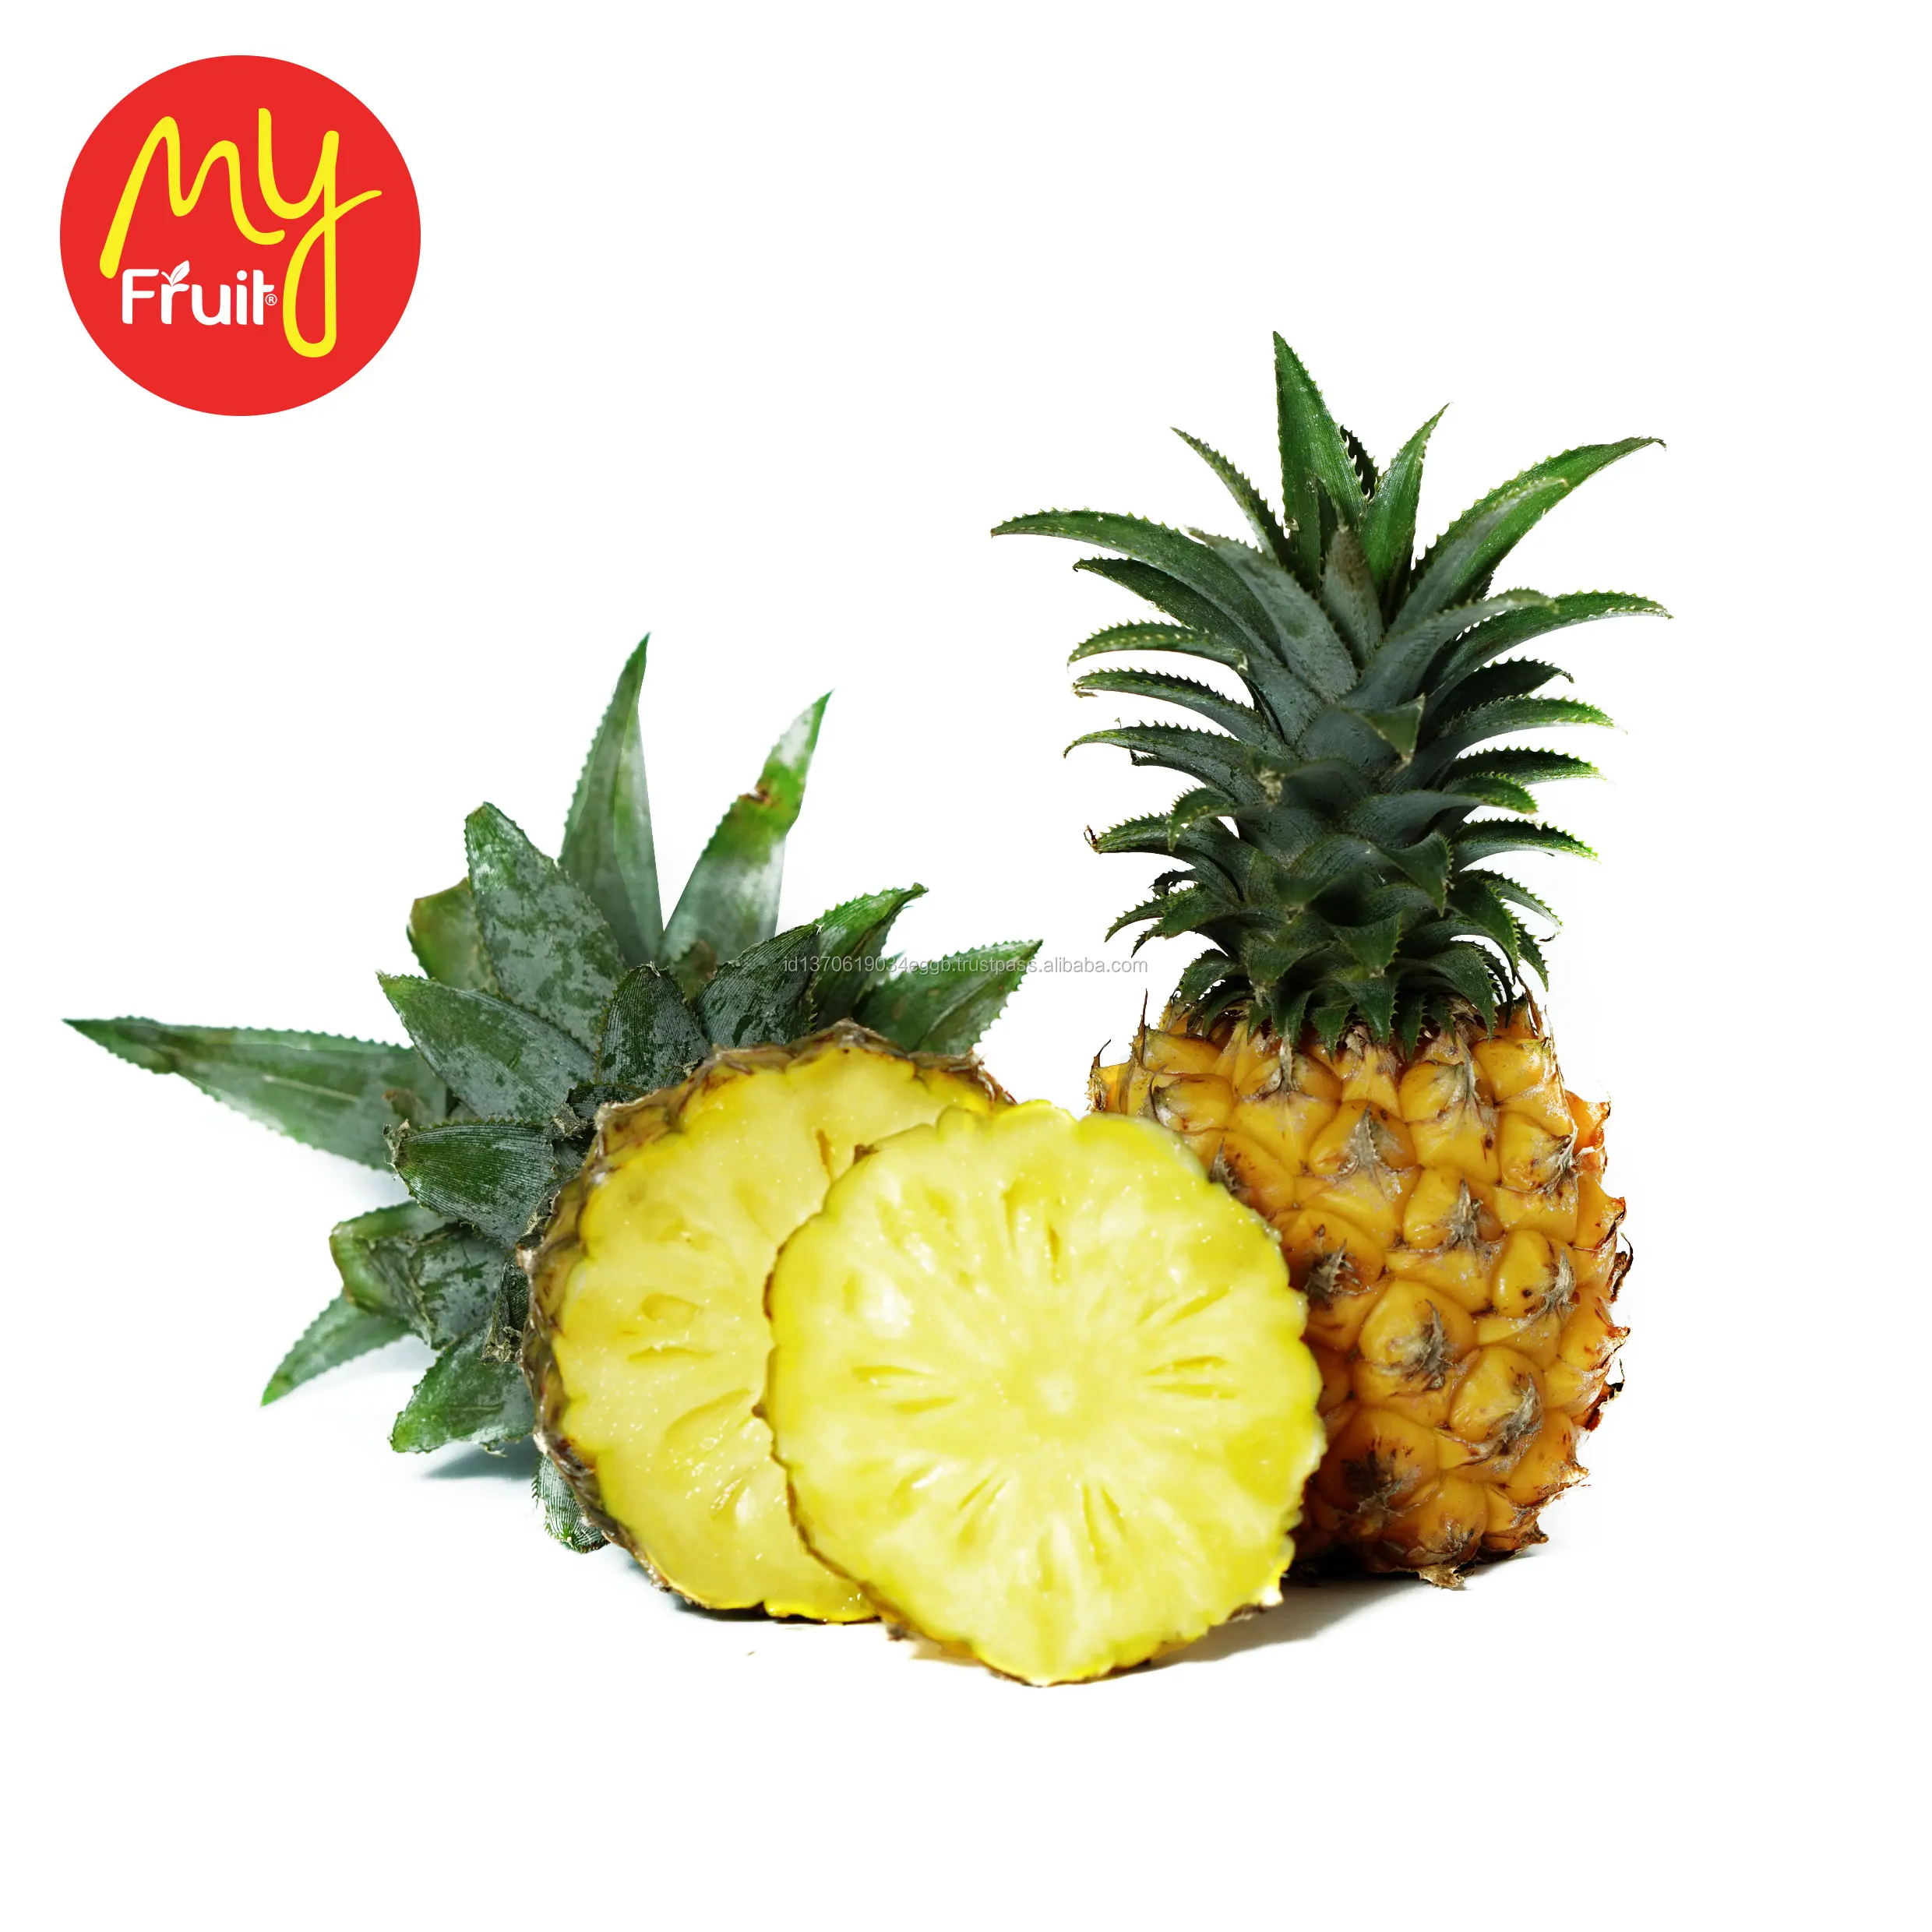 En Kaliteli Taze Ananas Icin Dogal Renk Pazari Toptan Fiyat Buy Ananas Taze Ananas Kurutulmus Meyve Ananas Product On Alibaba Com